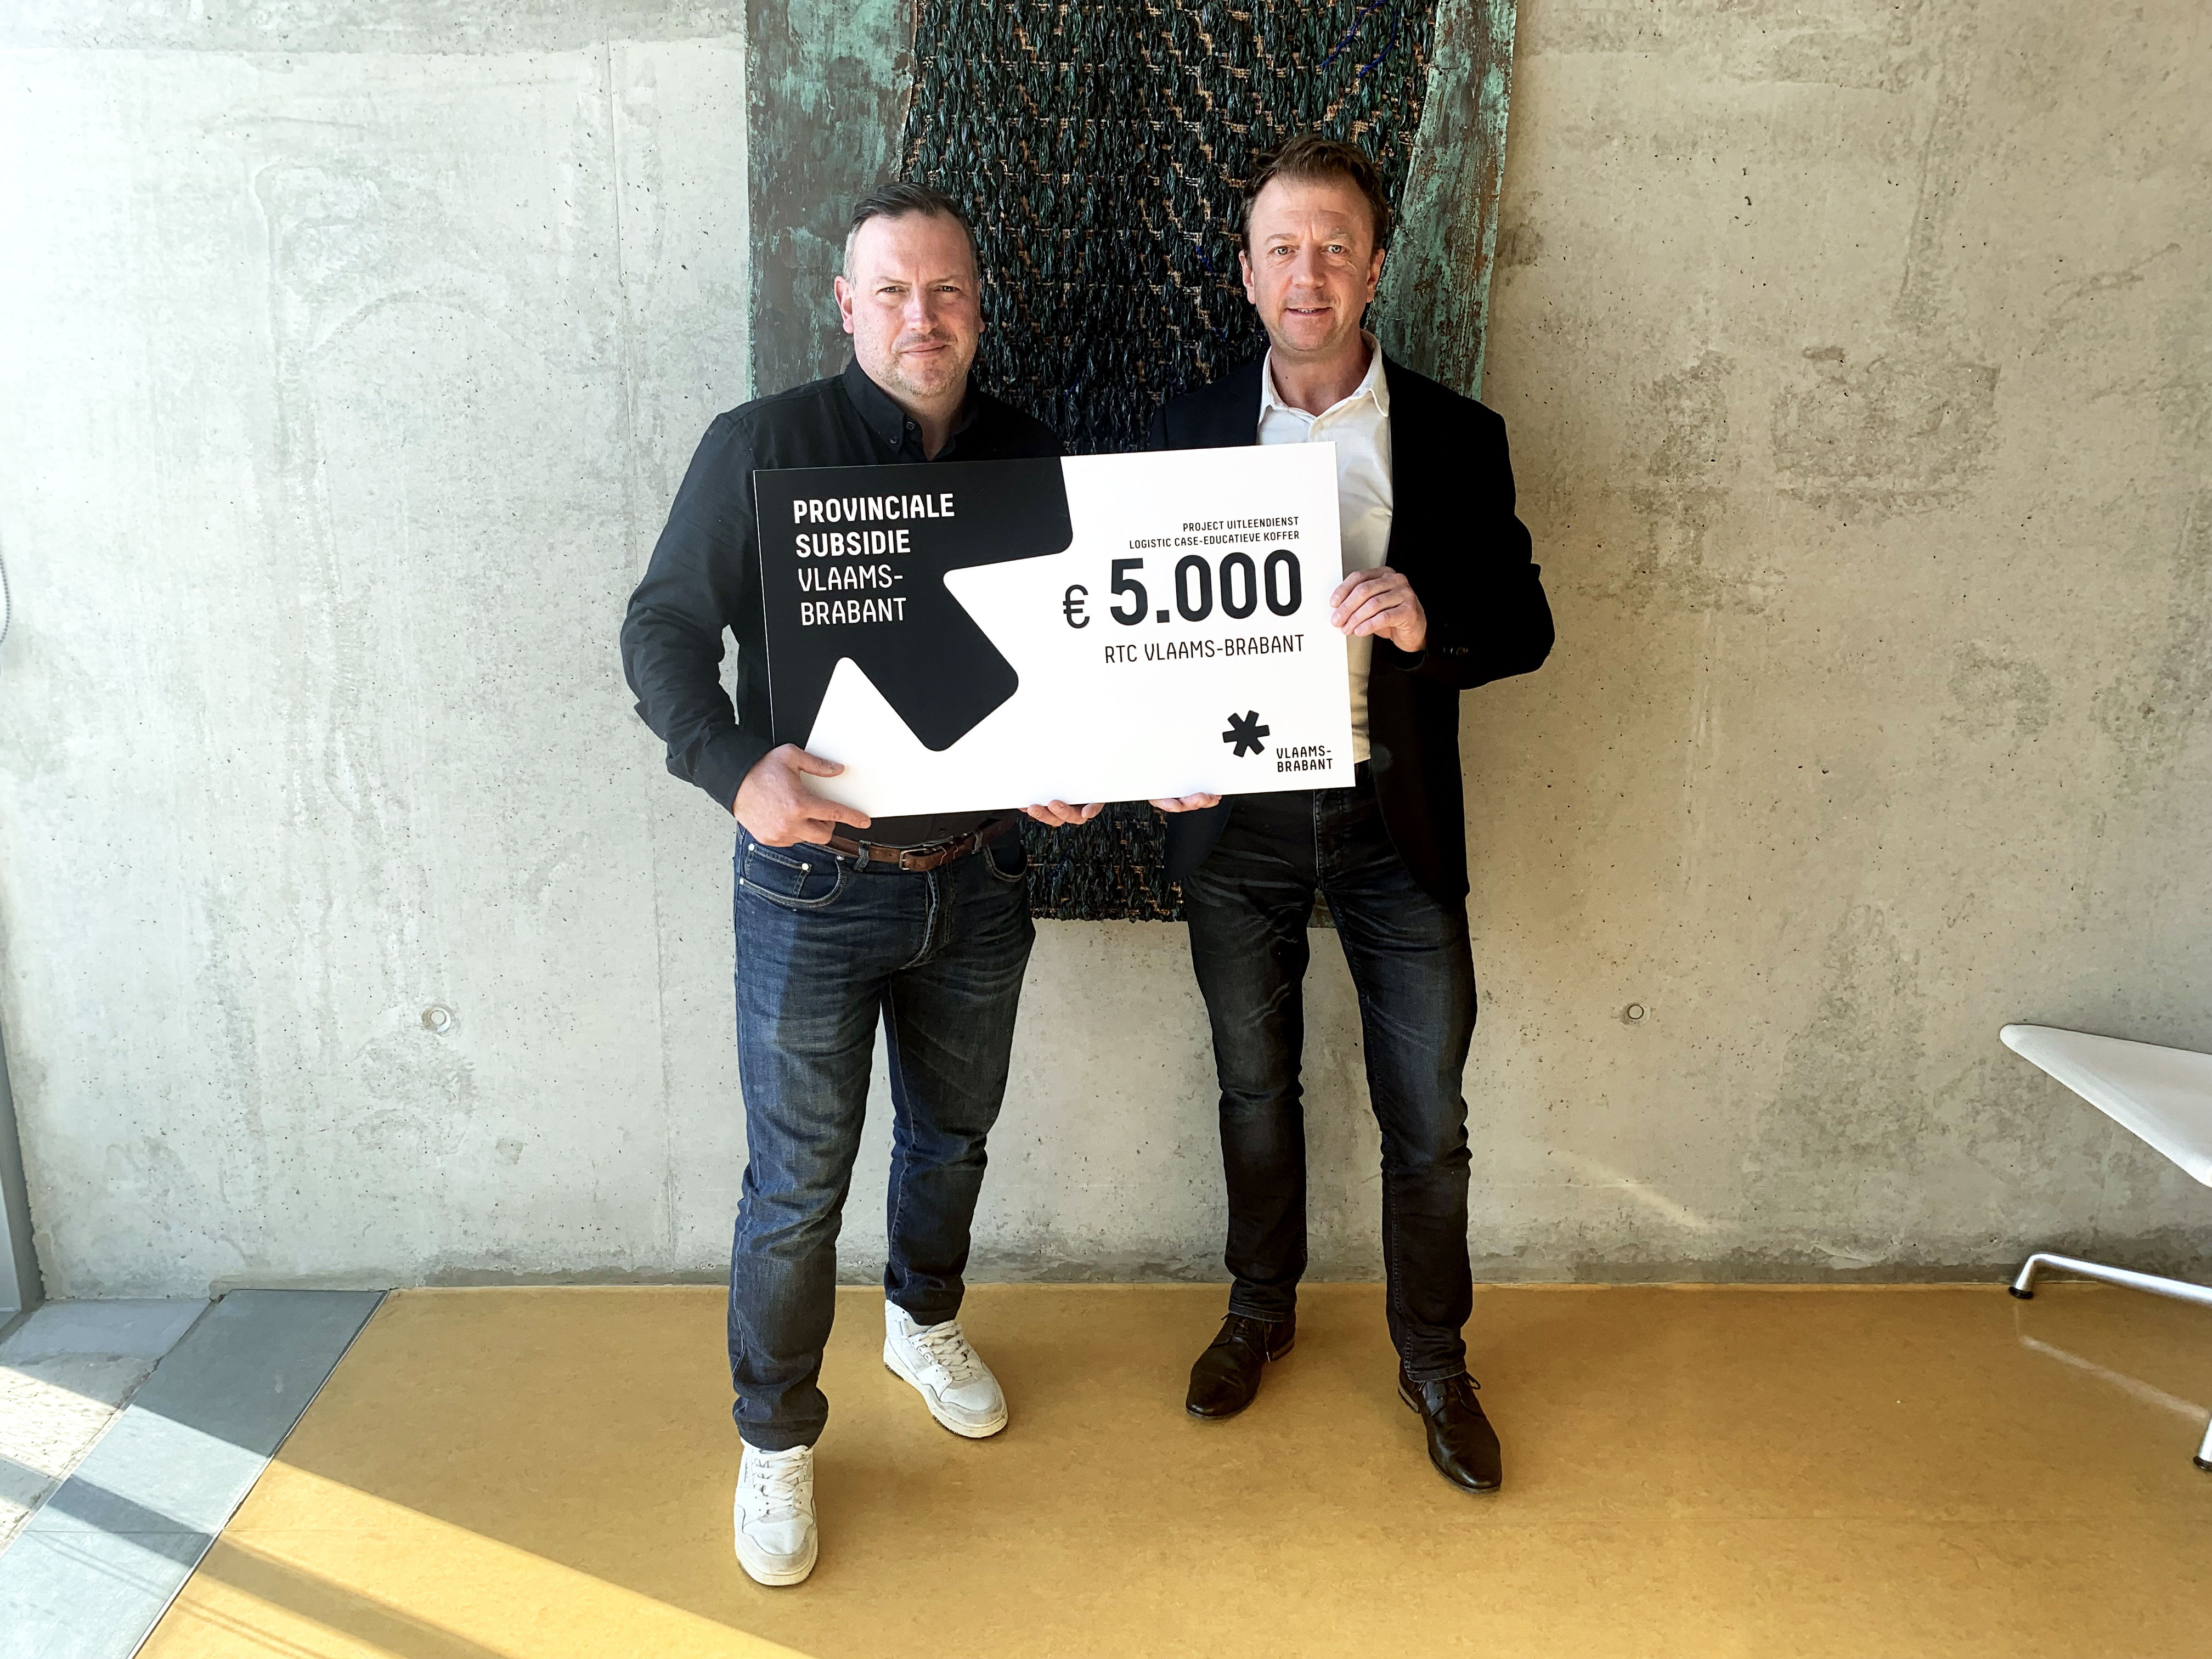 Gedeputeerde Gunther Coppens overhandigt de symbolische cheque aan Raf De Boeck, directeur van RTC Vlaams-Brabant.